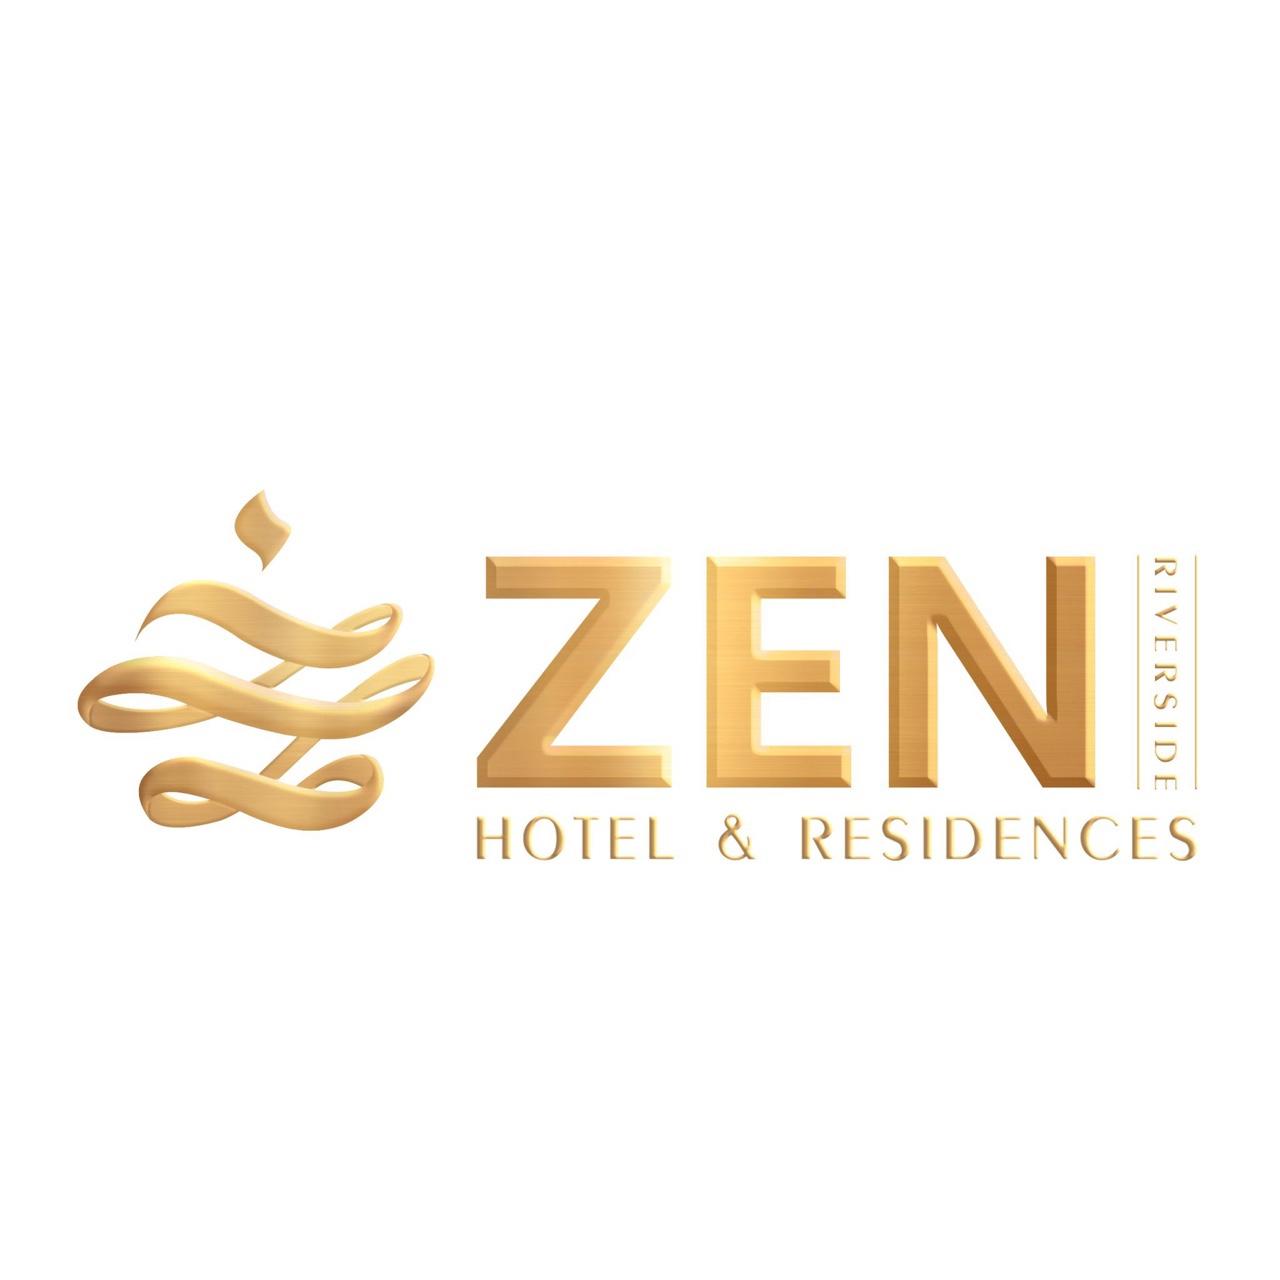 Zen Riverside Hotel & Residences